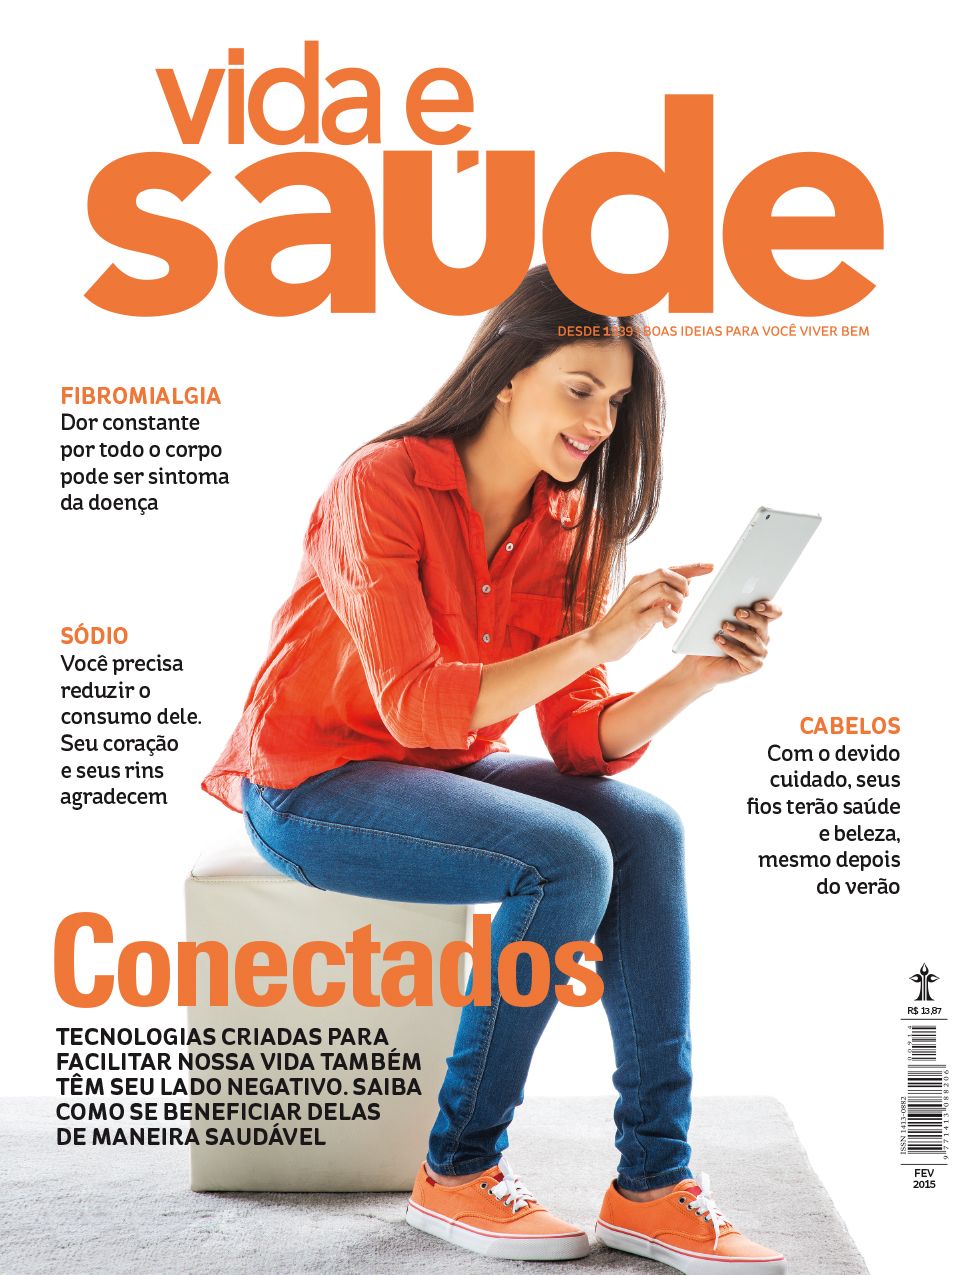 Revista aborda, entre outros assuntos, a utilização exagerada do sódio pelo brasileiro.